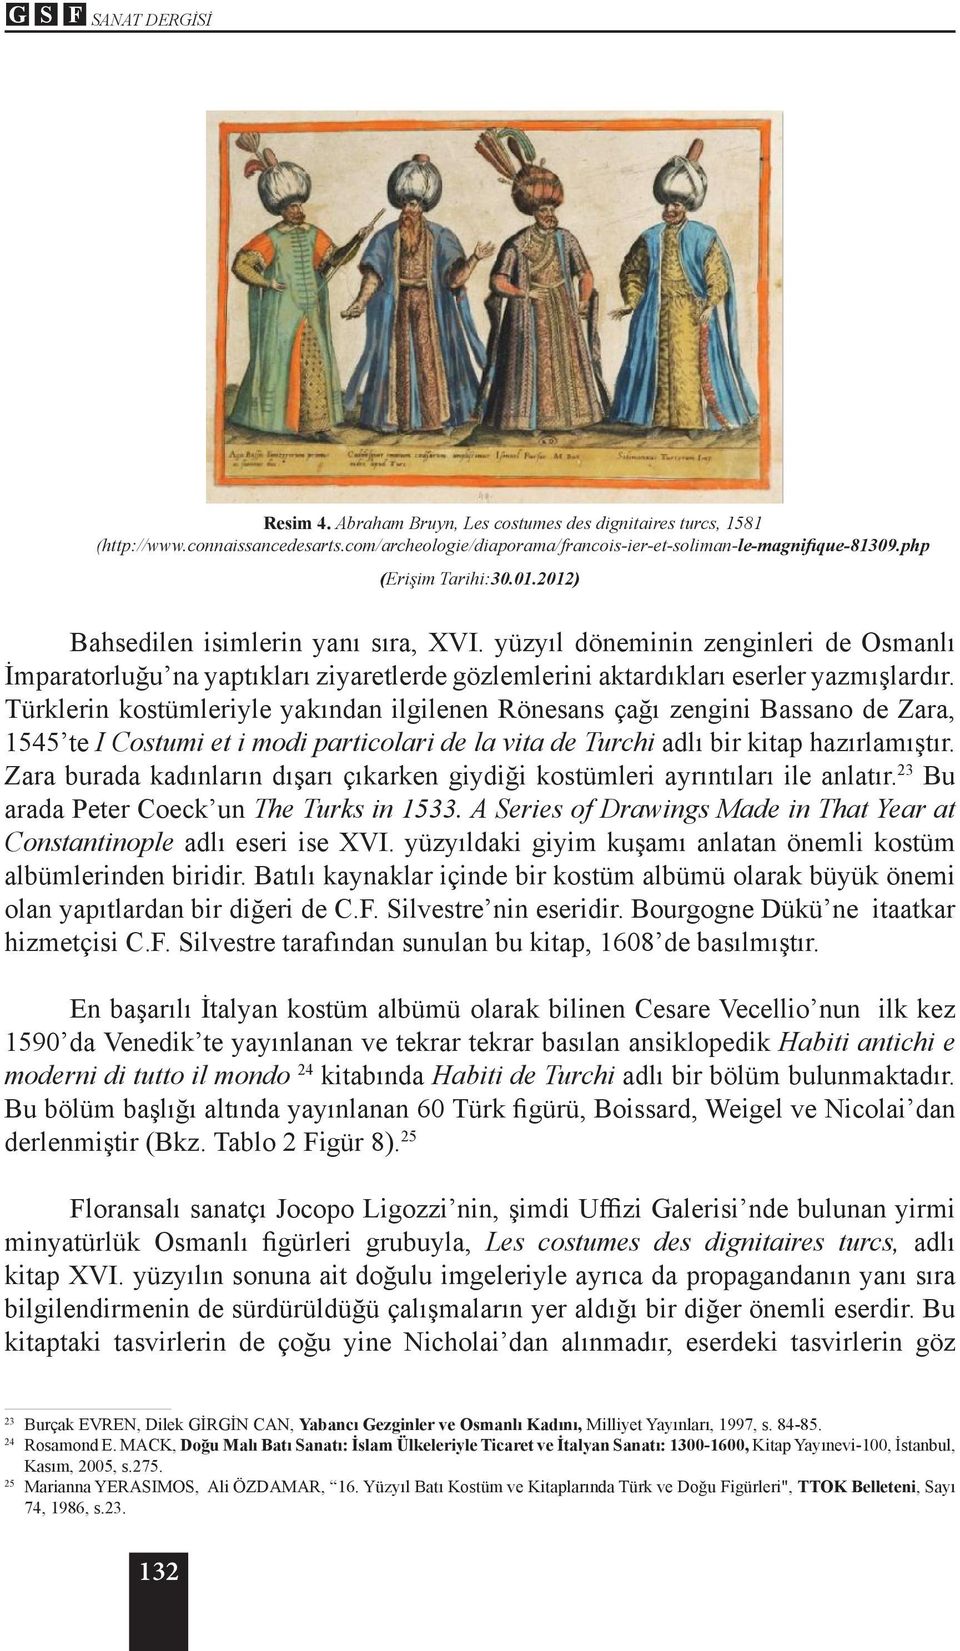 Türklerin kostümleriyle yakından ilgilenen Rönesans çağı zengini Bassano de Zara, 1545 te I Costumi et i modi particolari de la vita de Turchi adlı bir kitap hazırlamıştır.